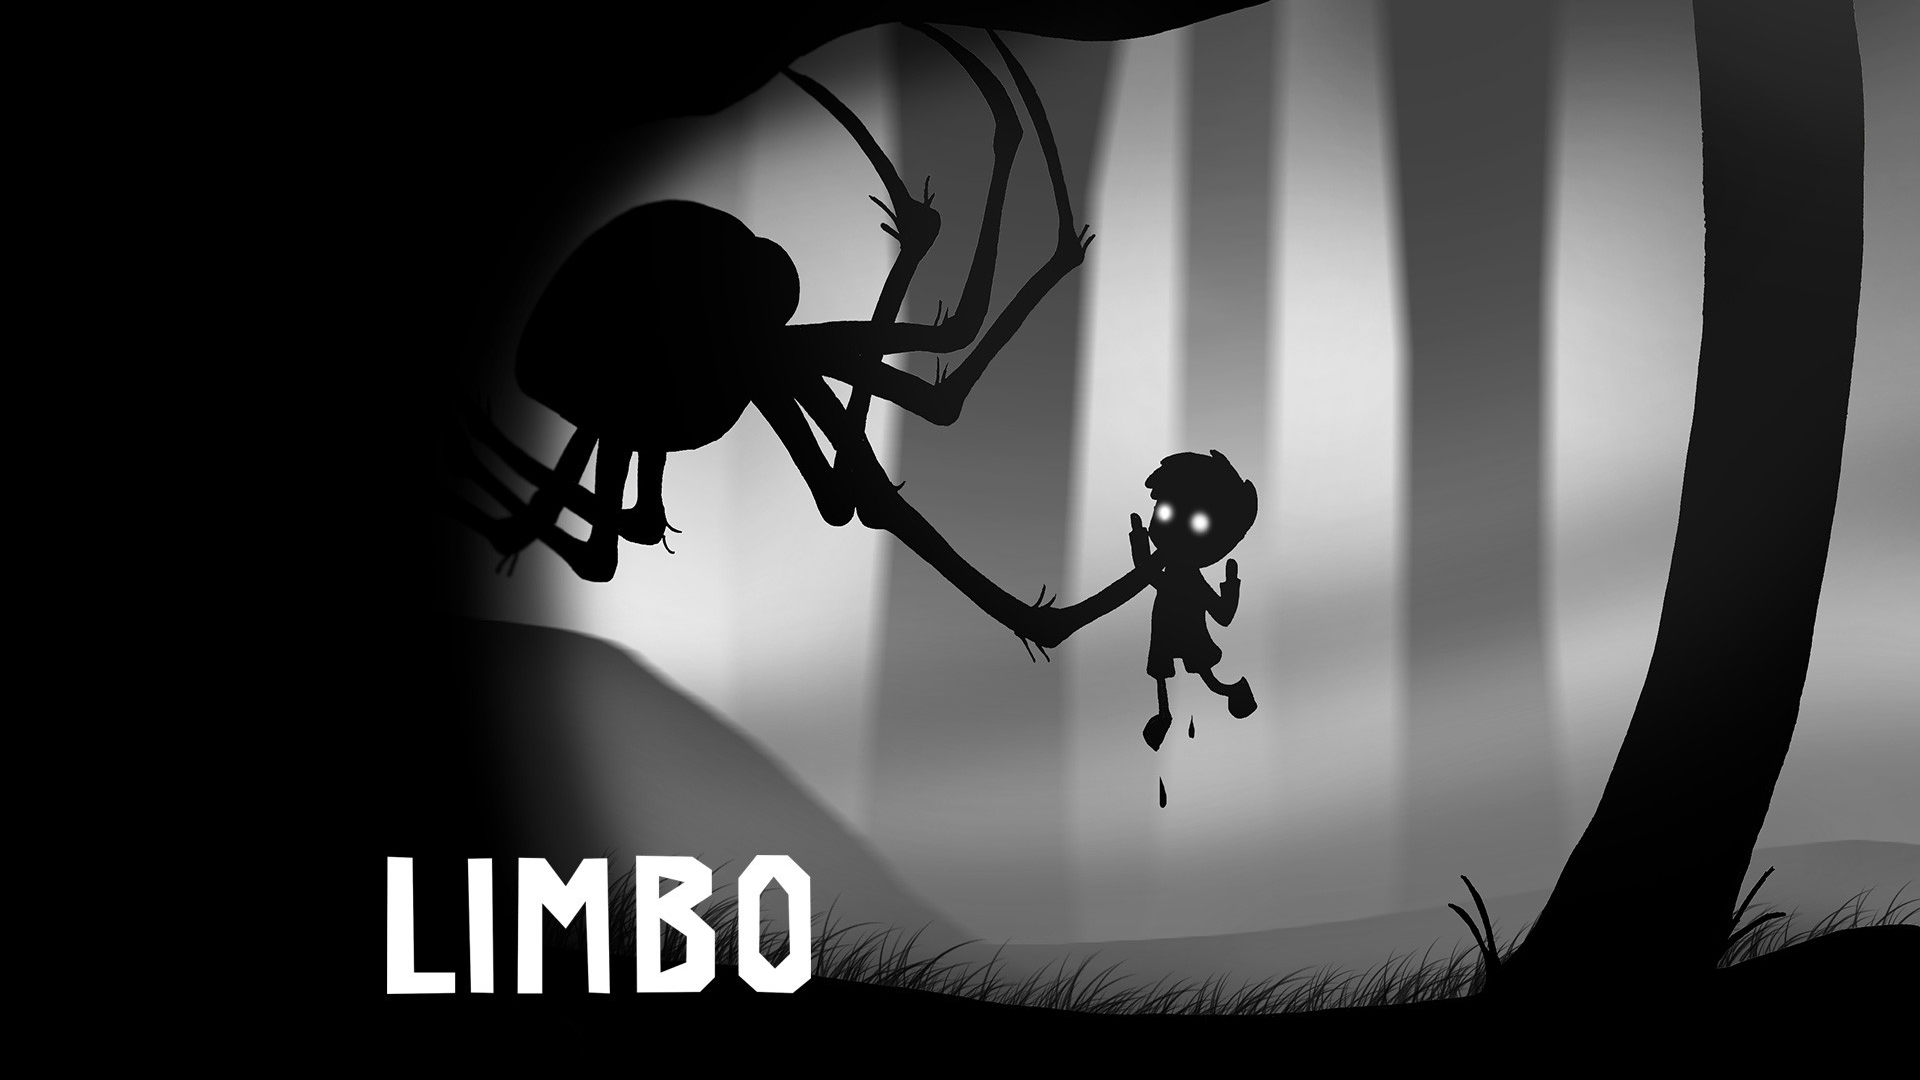 Limbo kết hợp cả yếu tố kinh dị và phiêu lưu